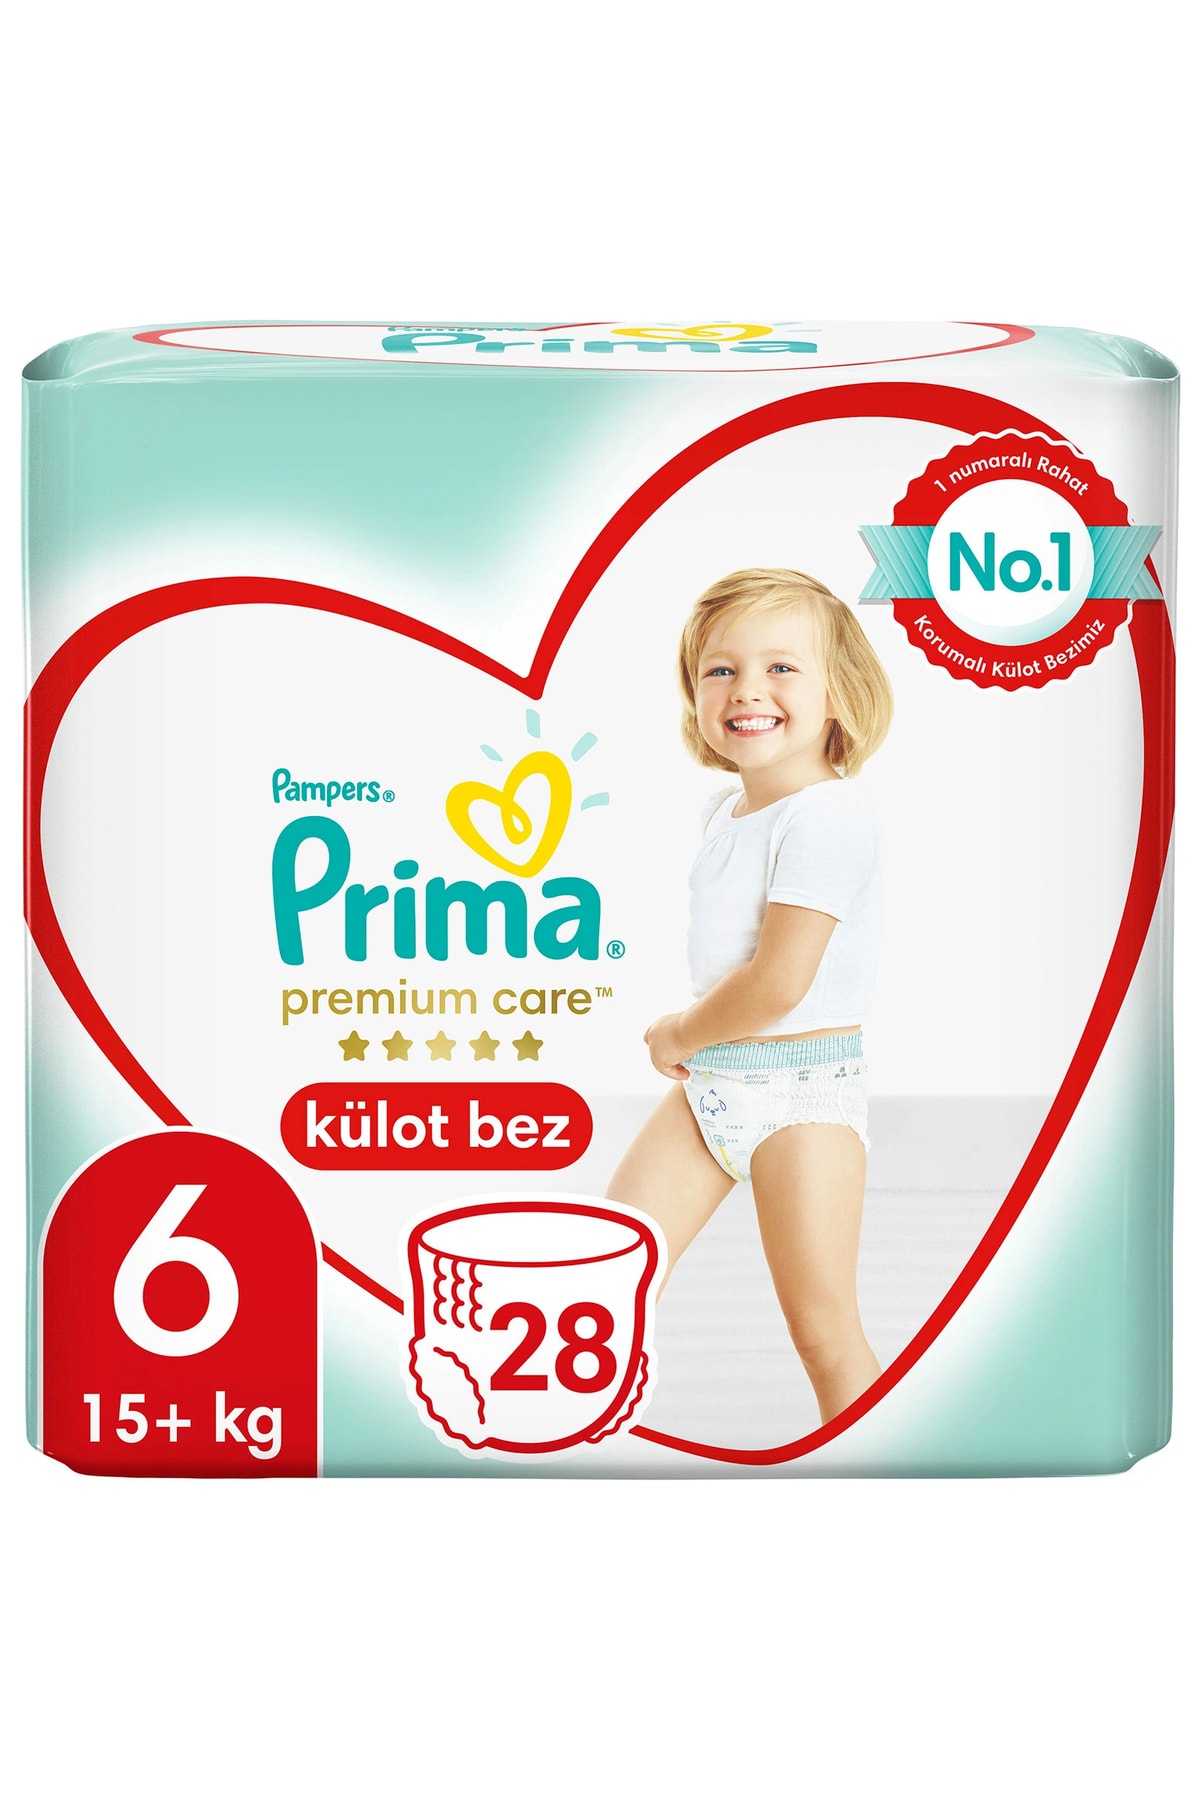 Prima Premium Care Külot Bez Extra Large 6 Beden Ikiz Paket 15+kg 28 Adet